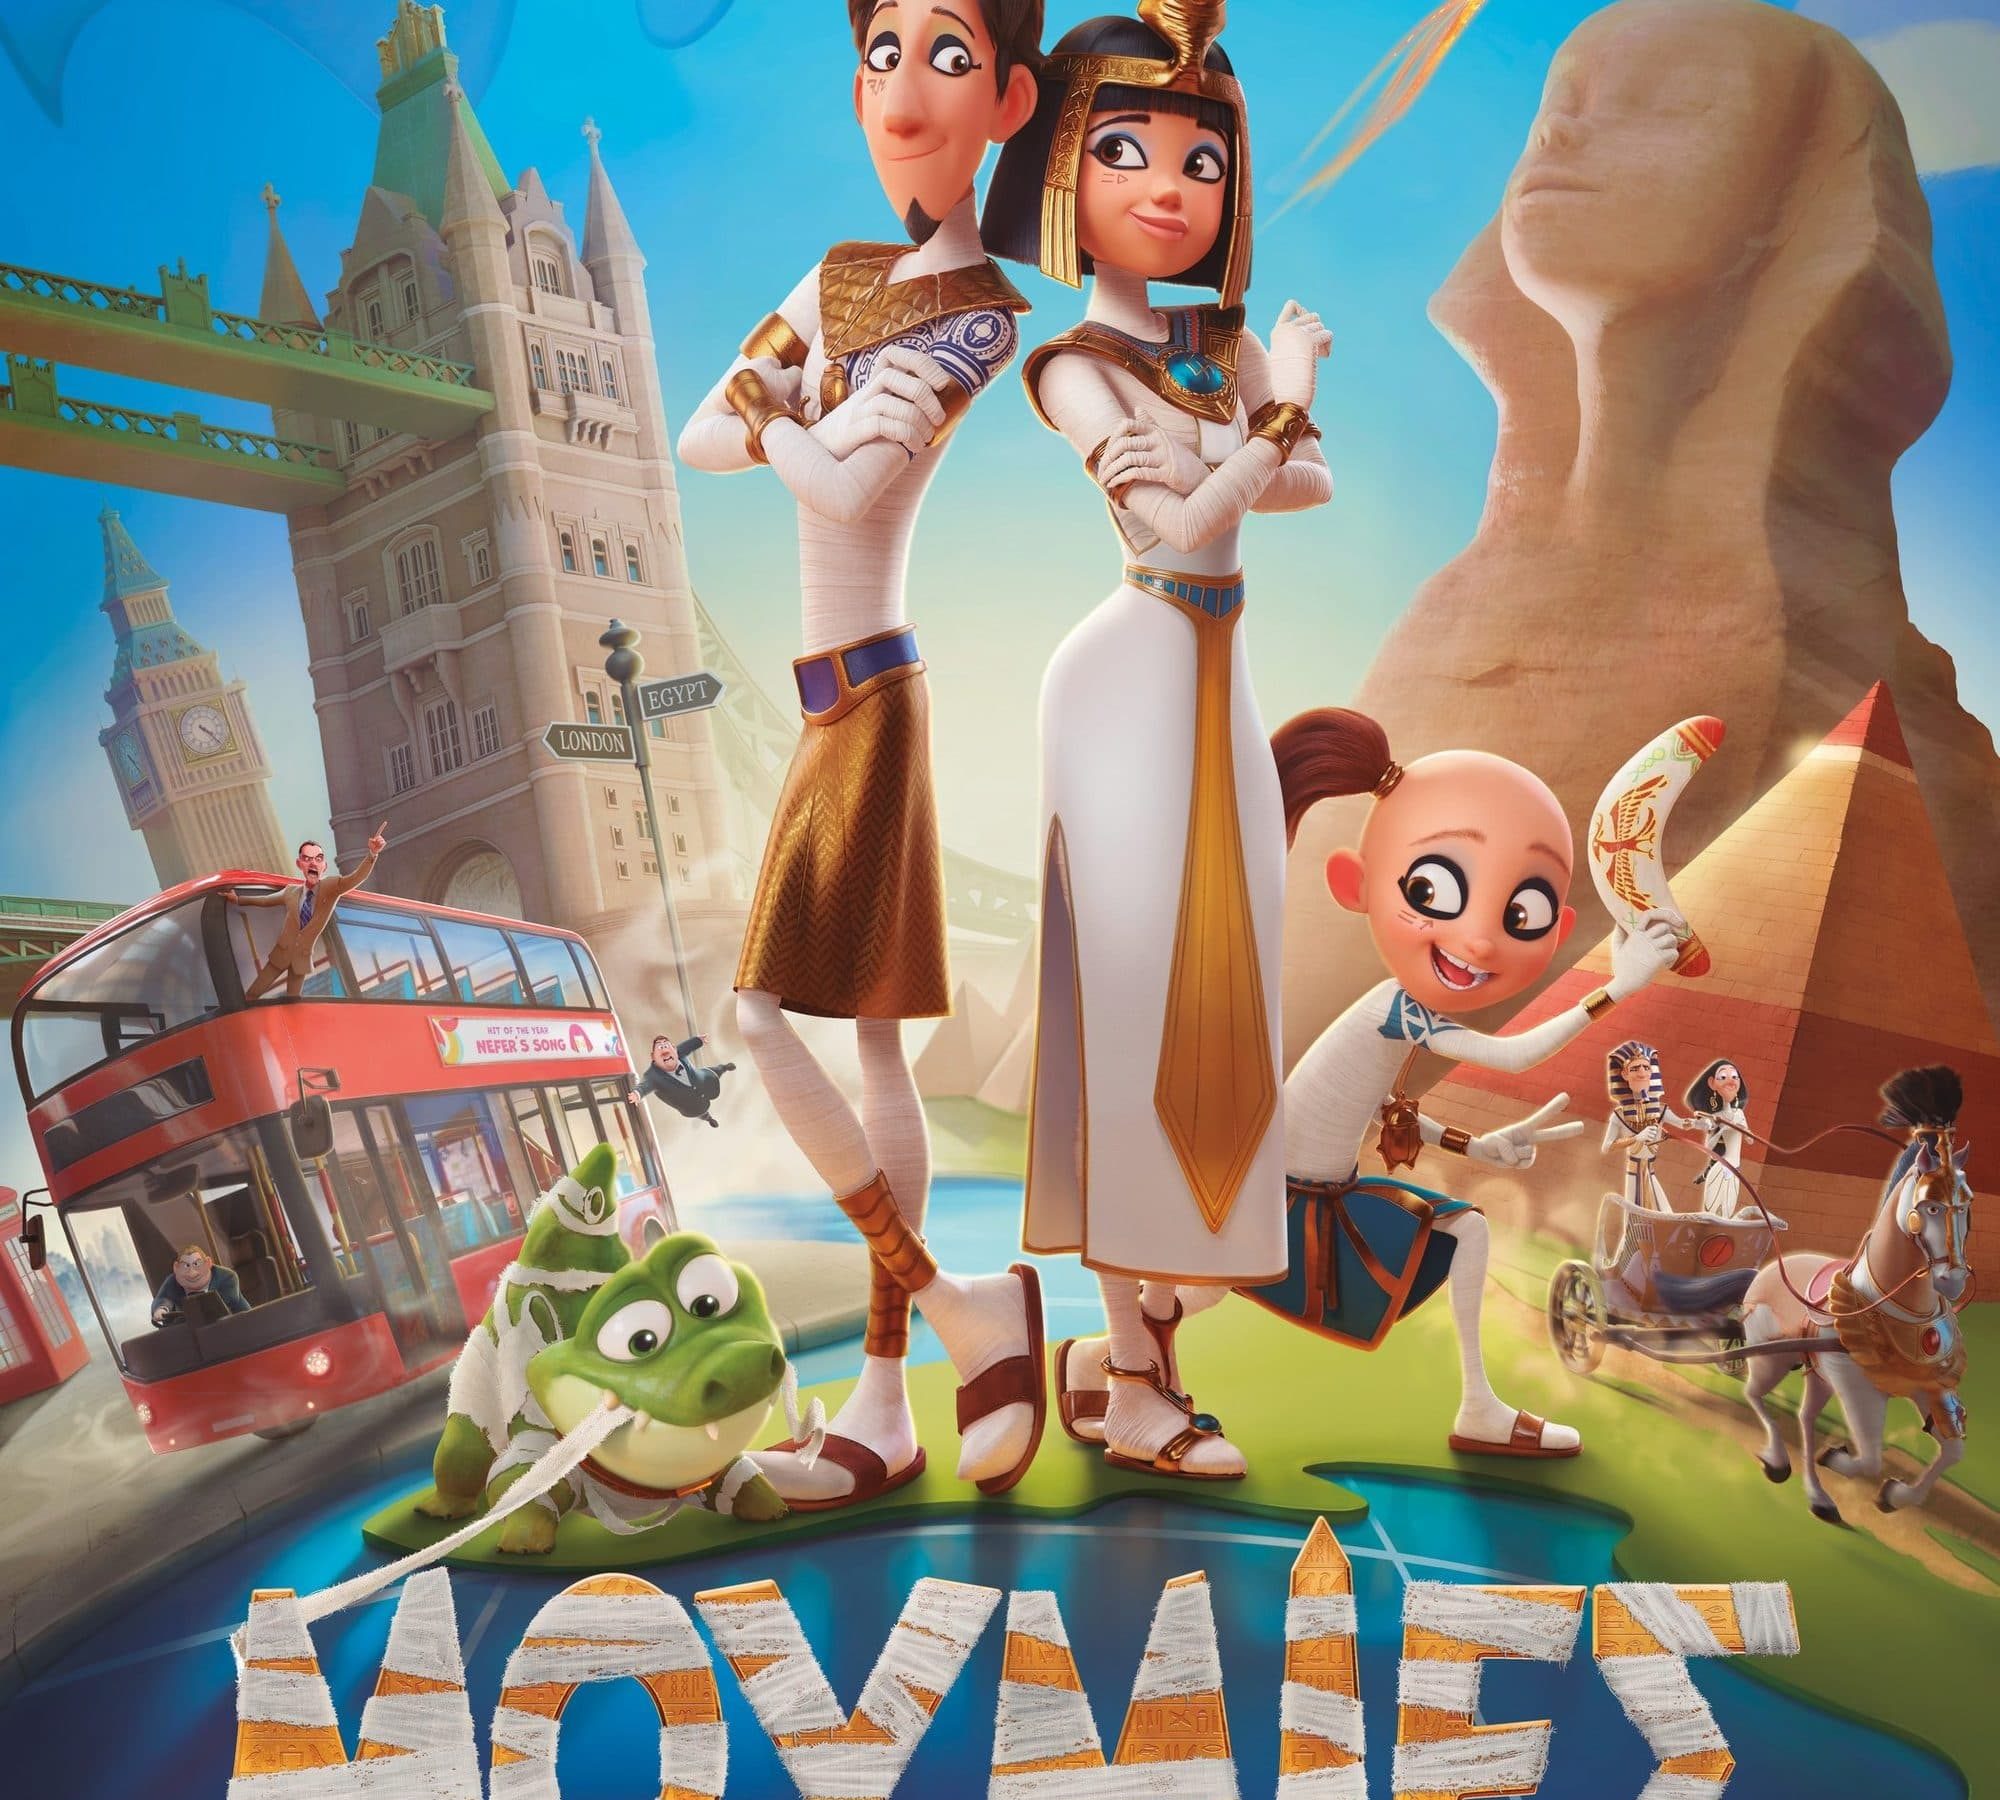 Poster for the movie "Μούμιες"